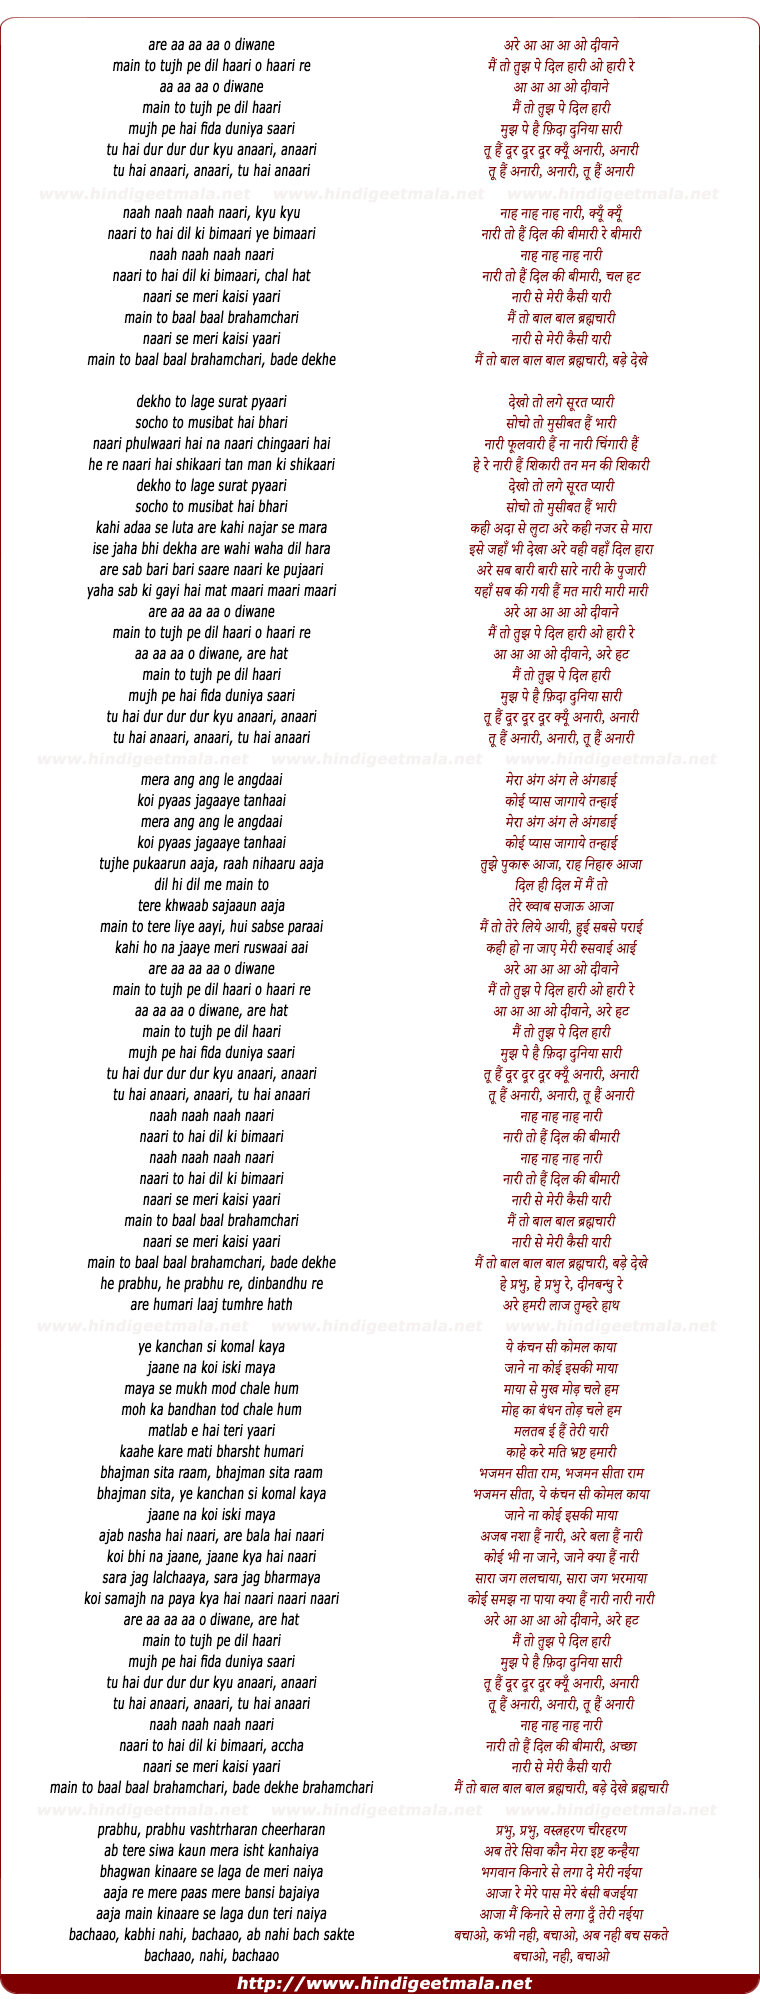 lyrics of song Main To Baal Baal Brahamchari